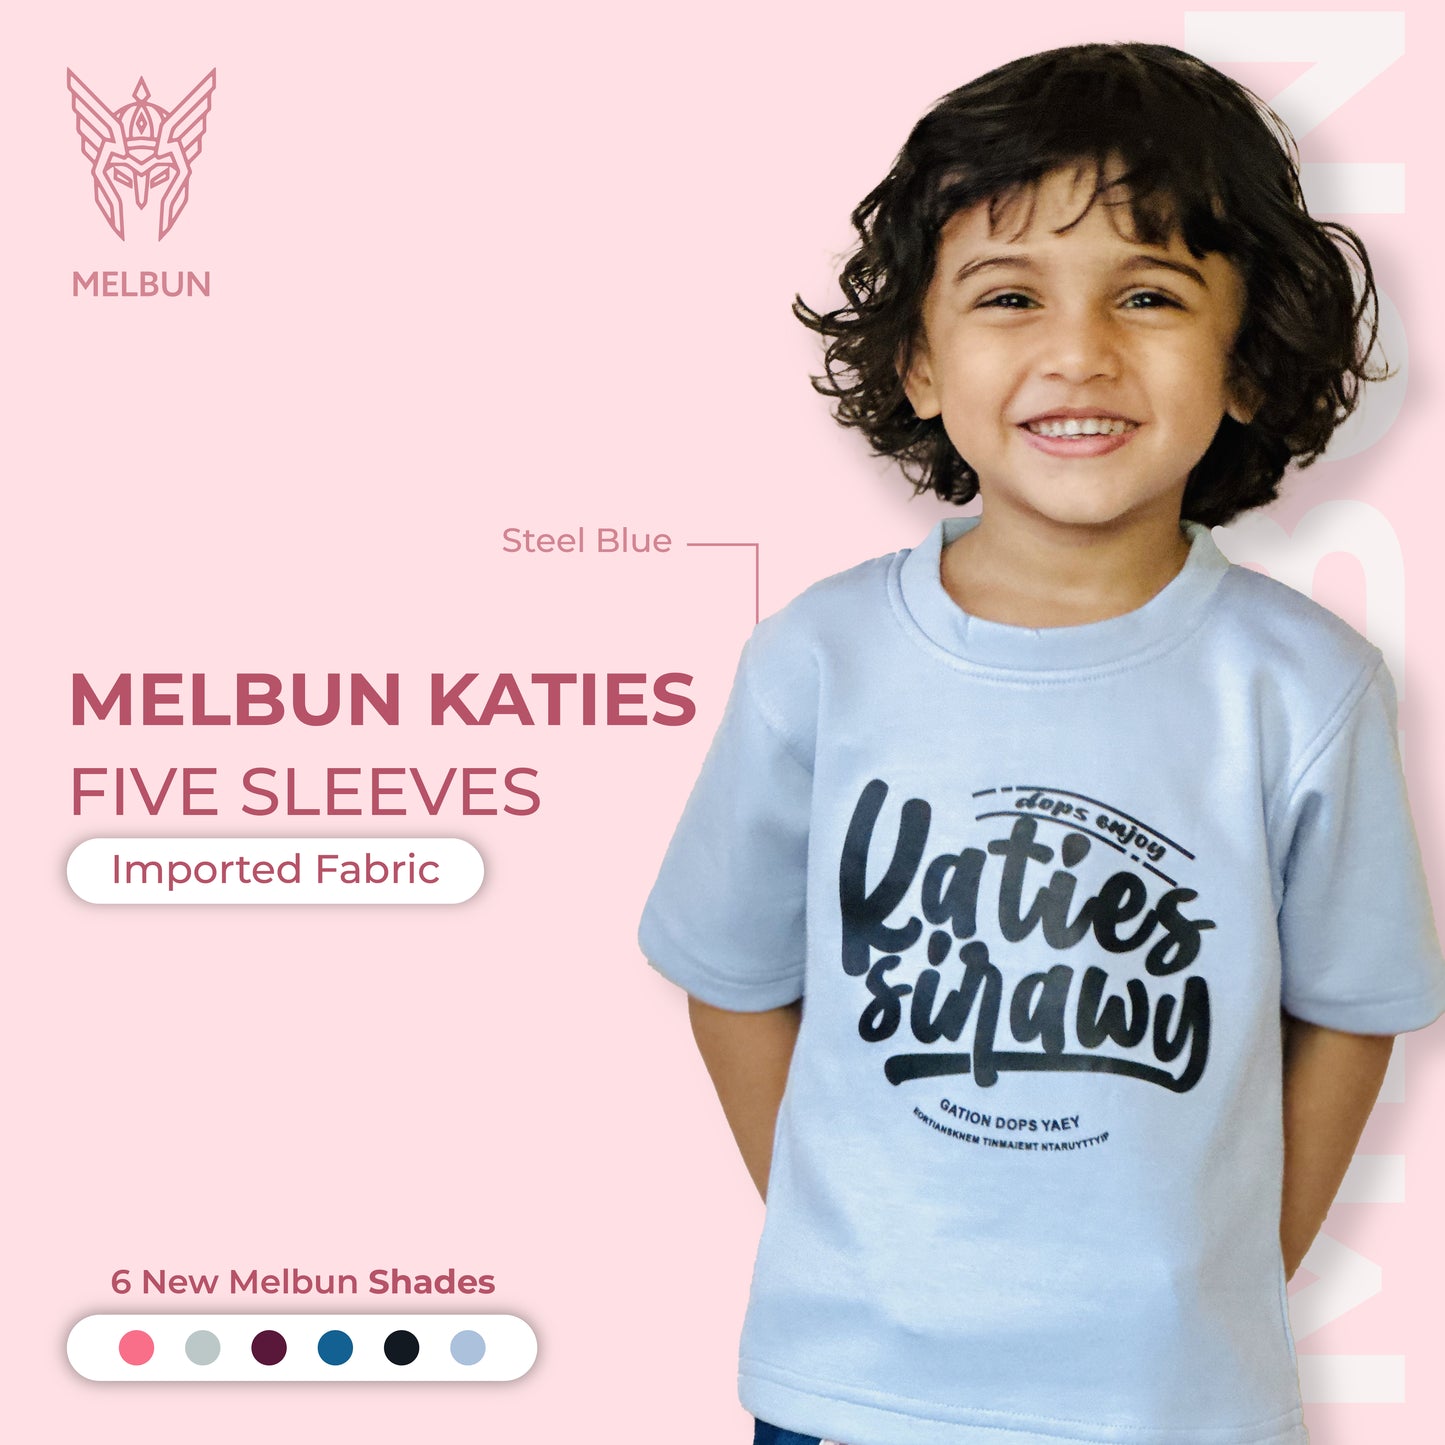 Steel Blue Melbun Katies Five Sleeves T-shirt